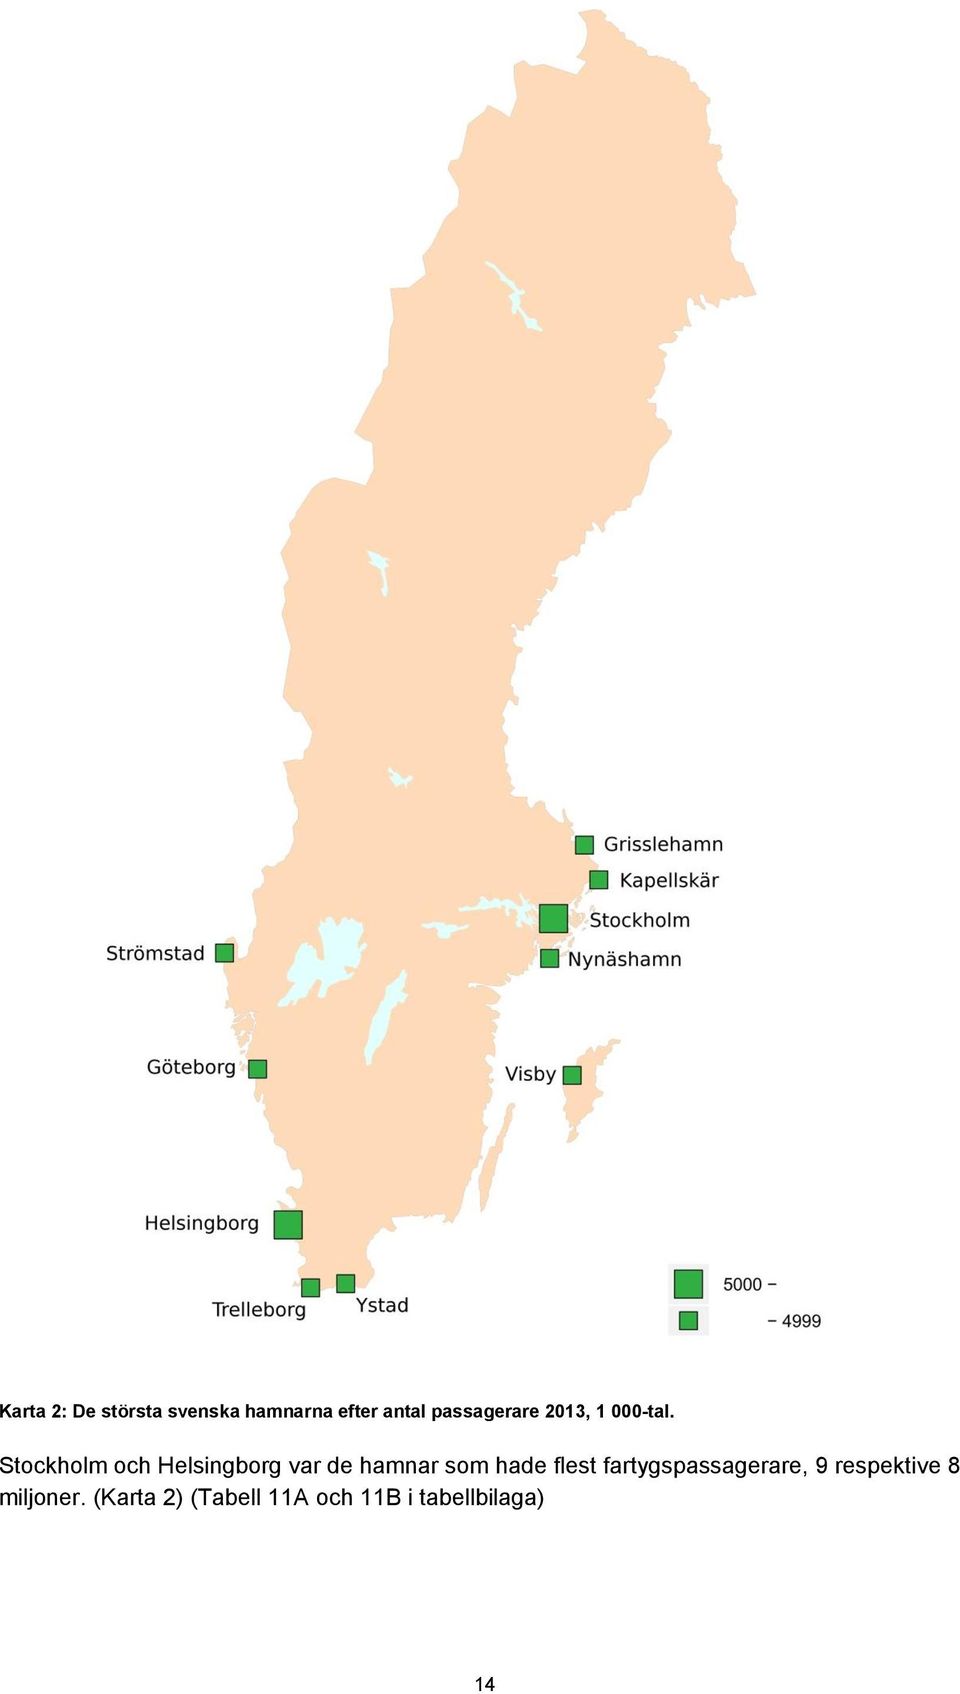 Stockholm och Helsingborg var de hamnar som hade flest